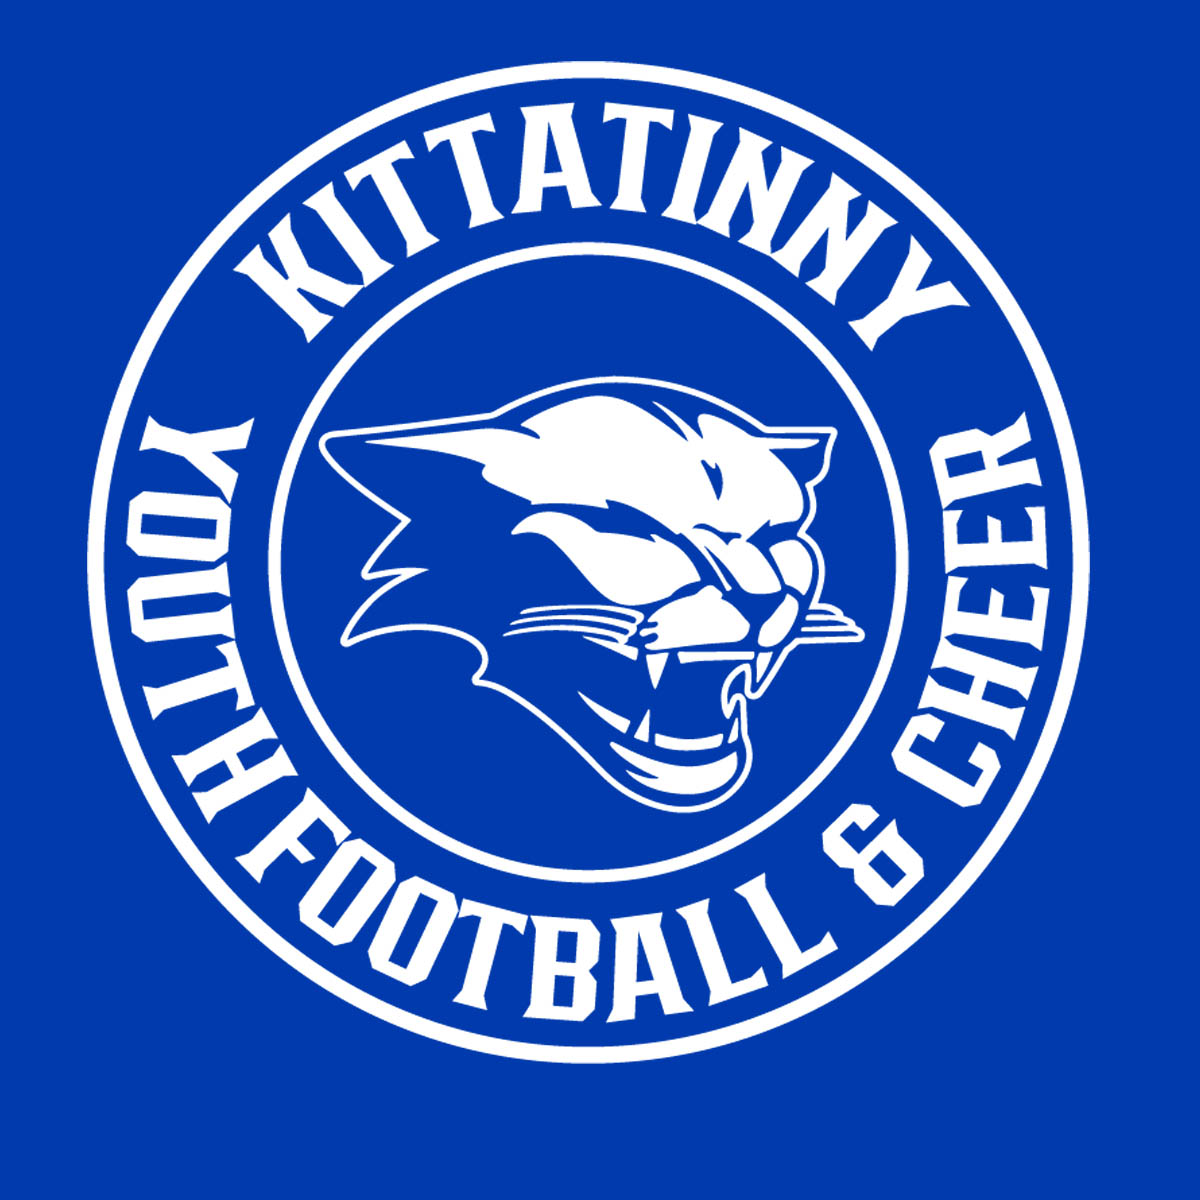 Kittatinny Youth Football and Cheer